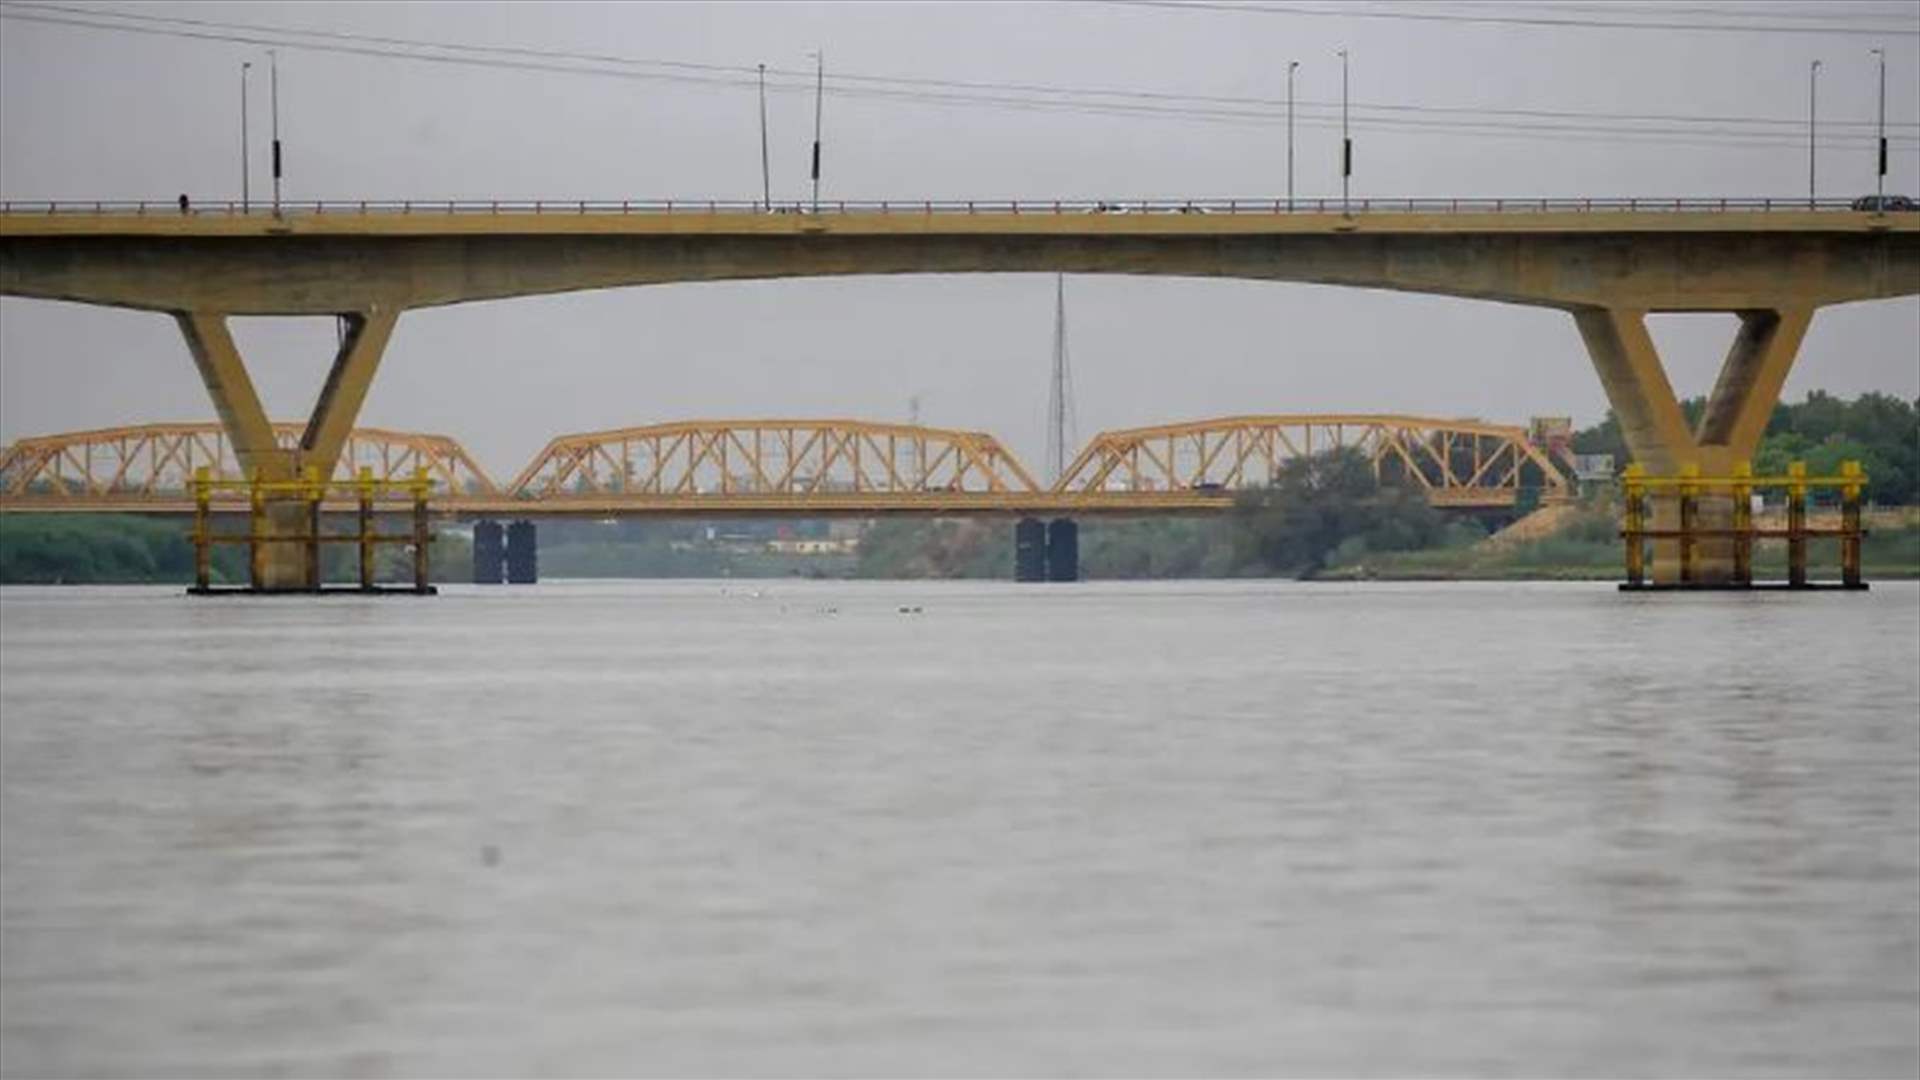 تدمير جسر رئيسي في الخرطوم وتبادل للاتهامات